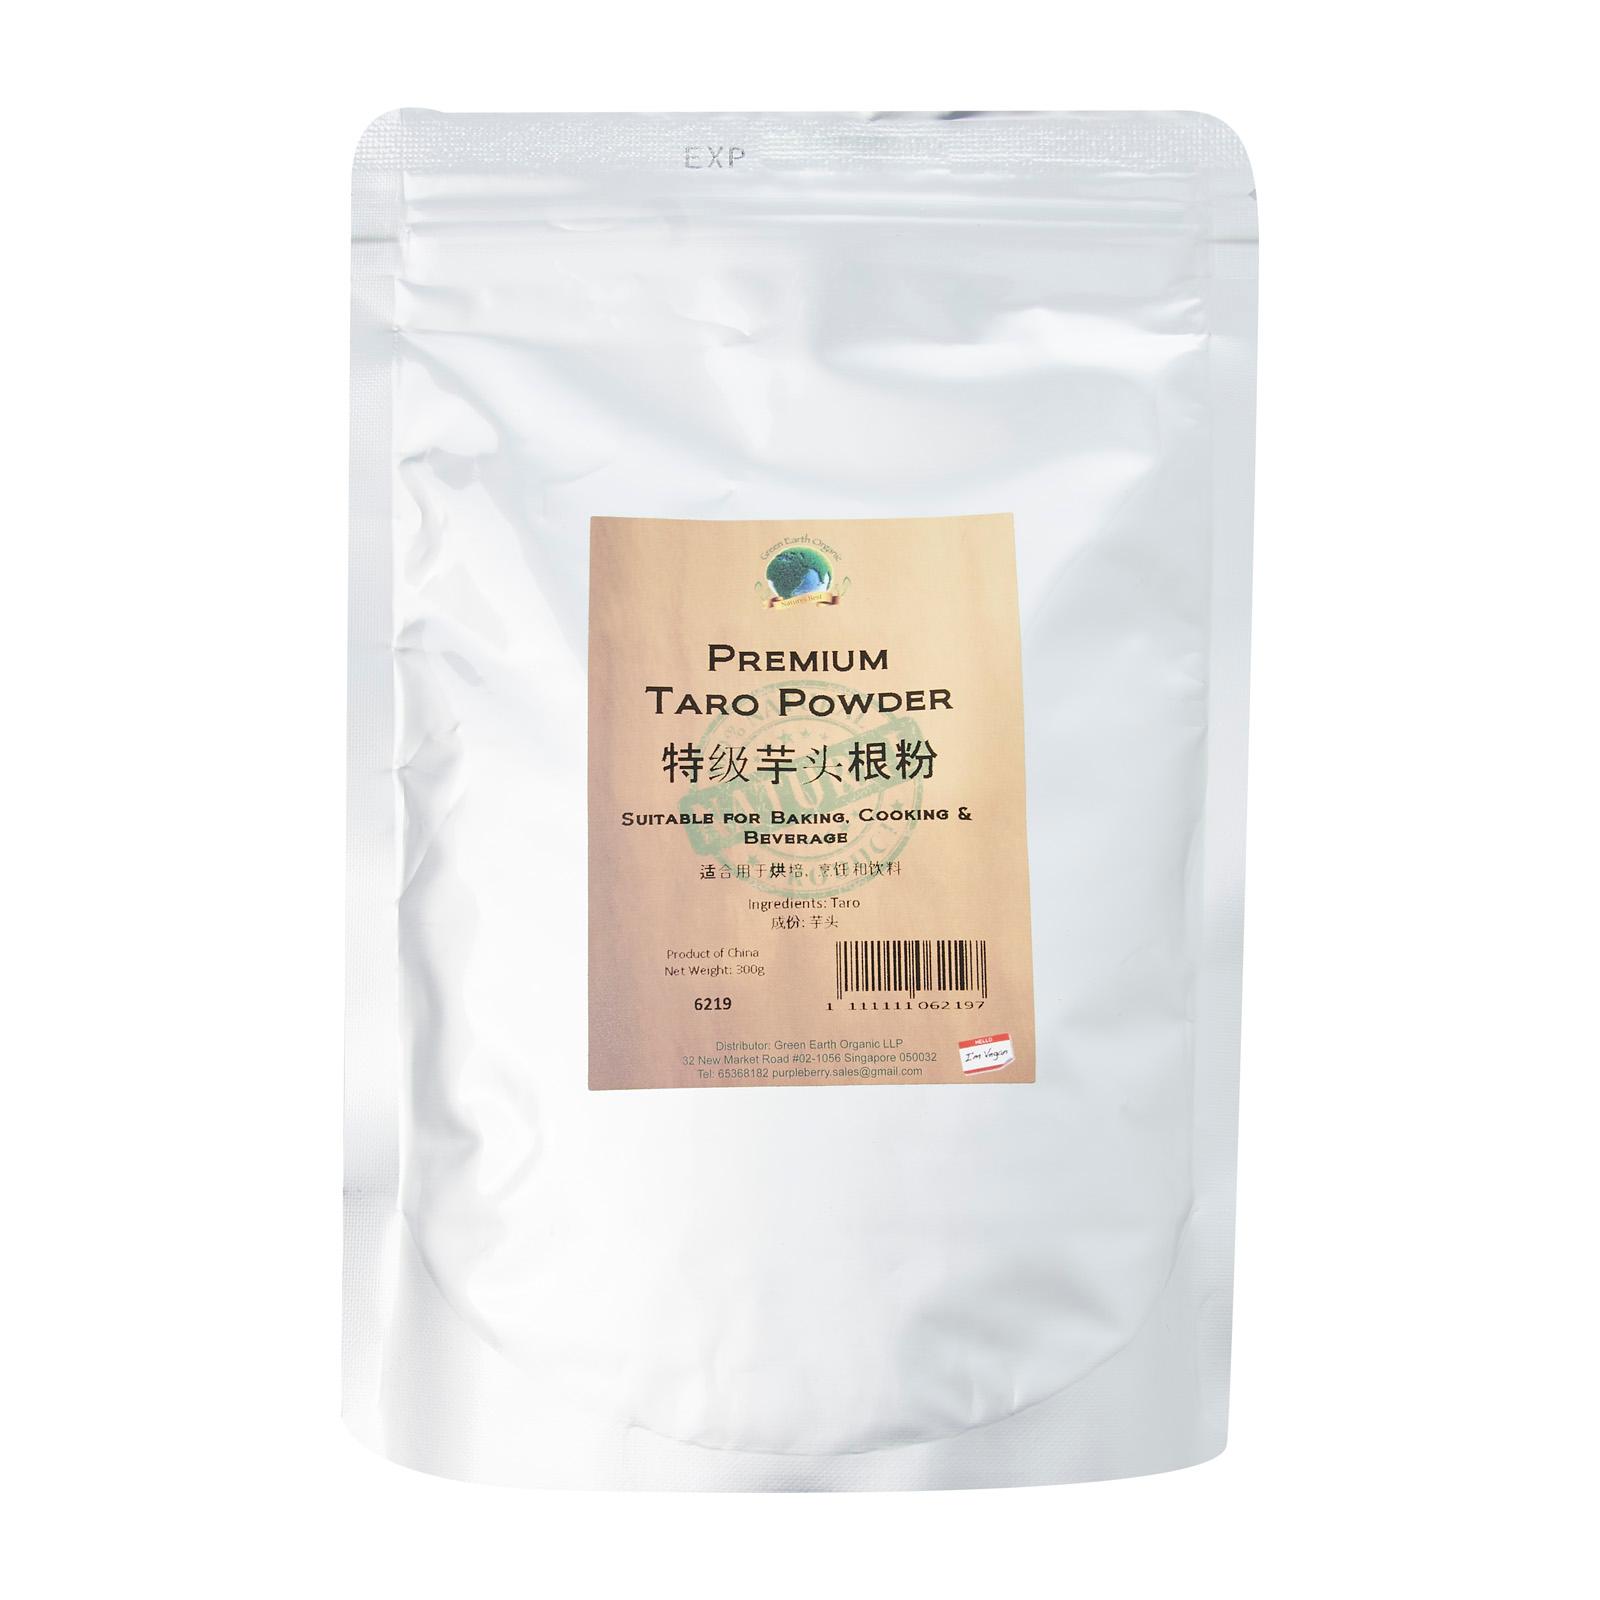 Premium Taro Powder